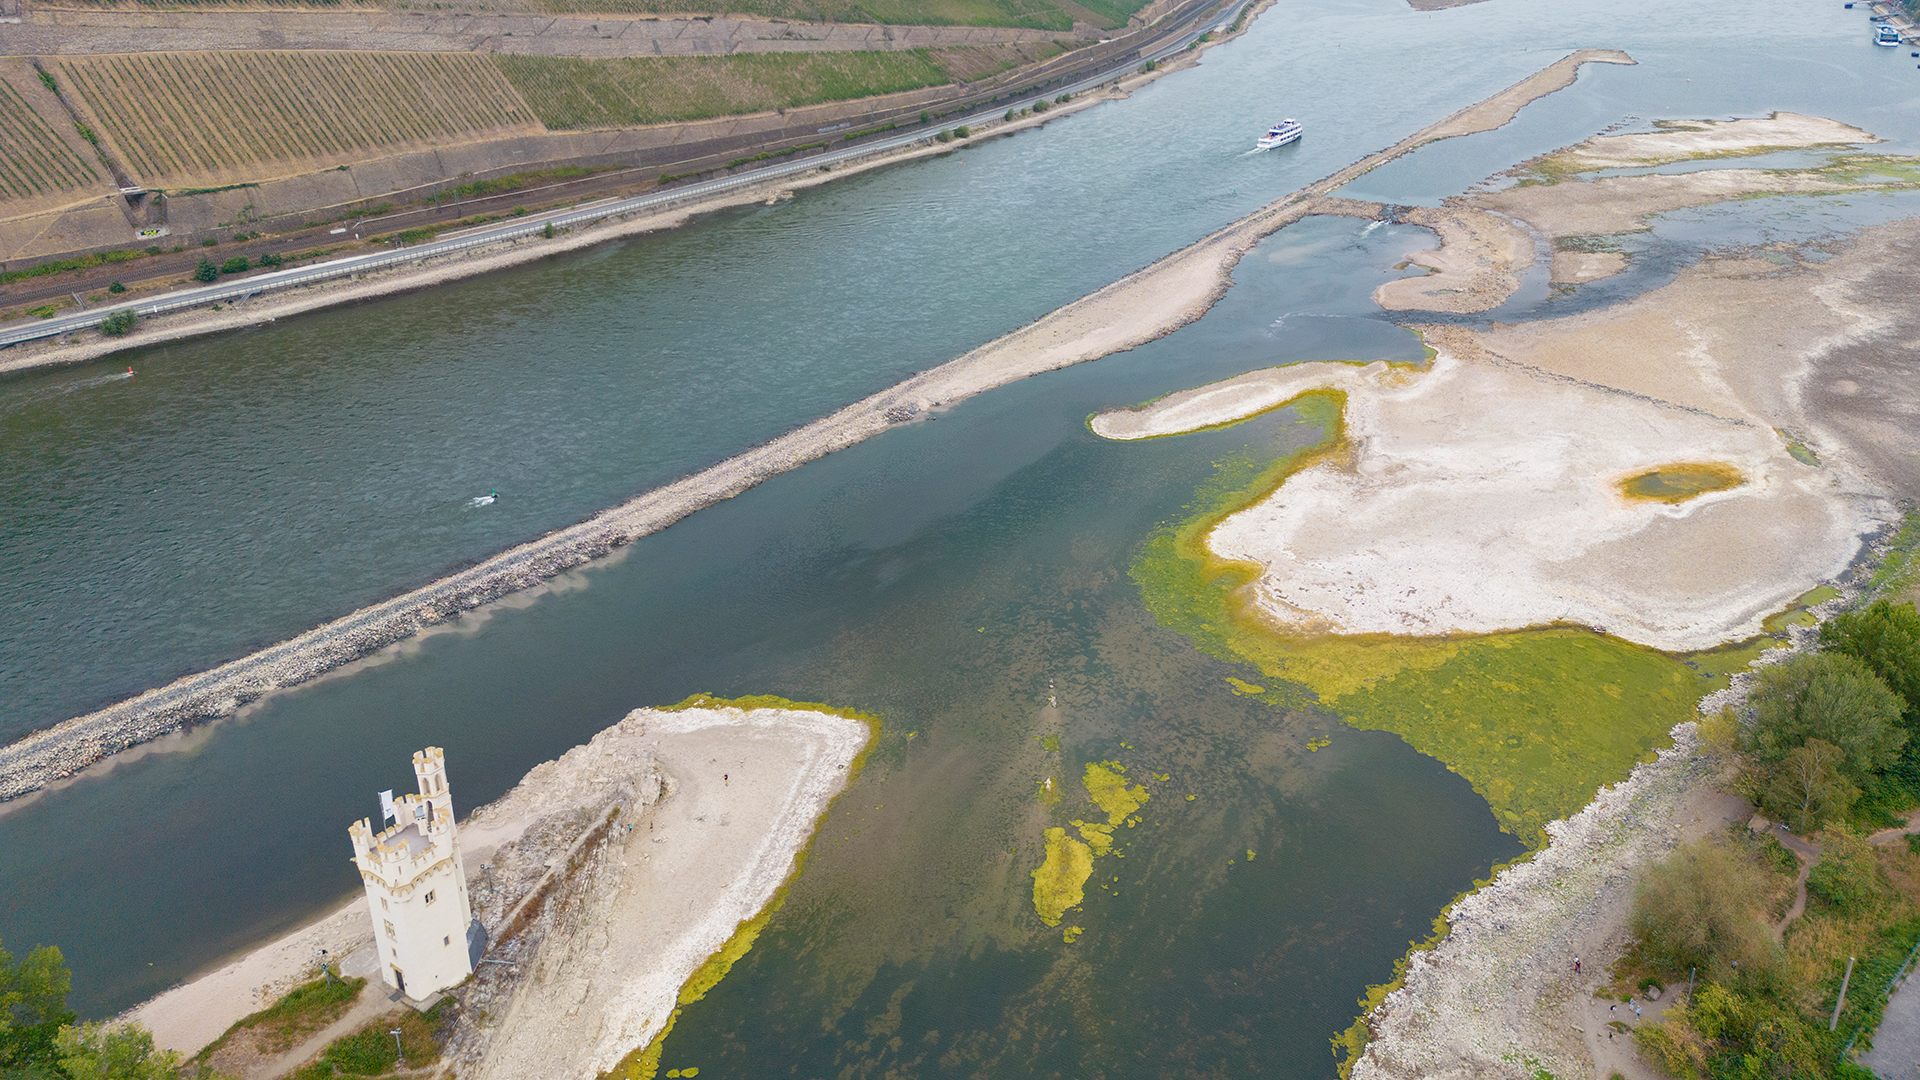 Luftbild vom Rhein bei Bingen mit wenig Wasser. | dpa